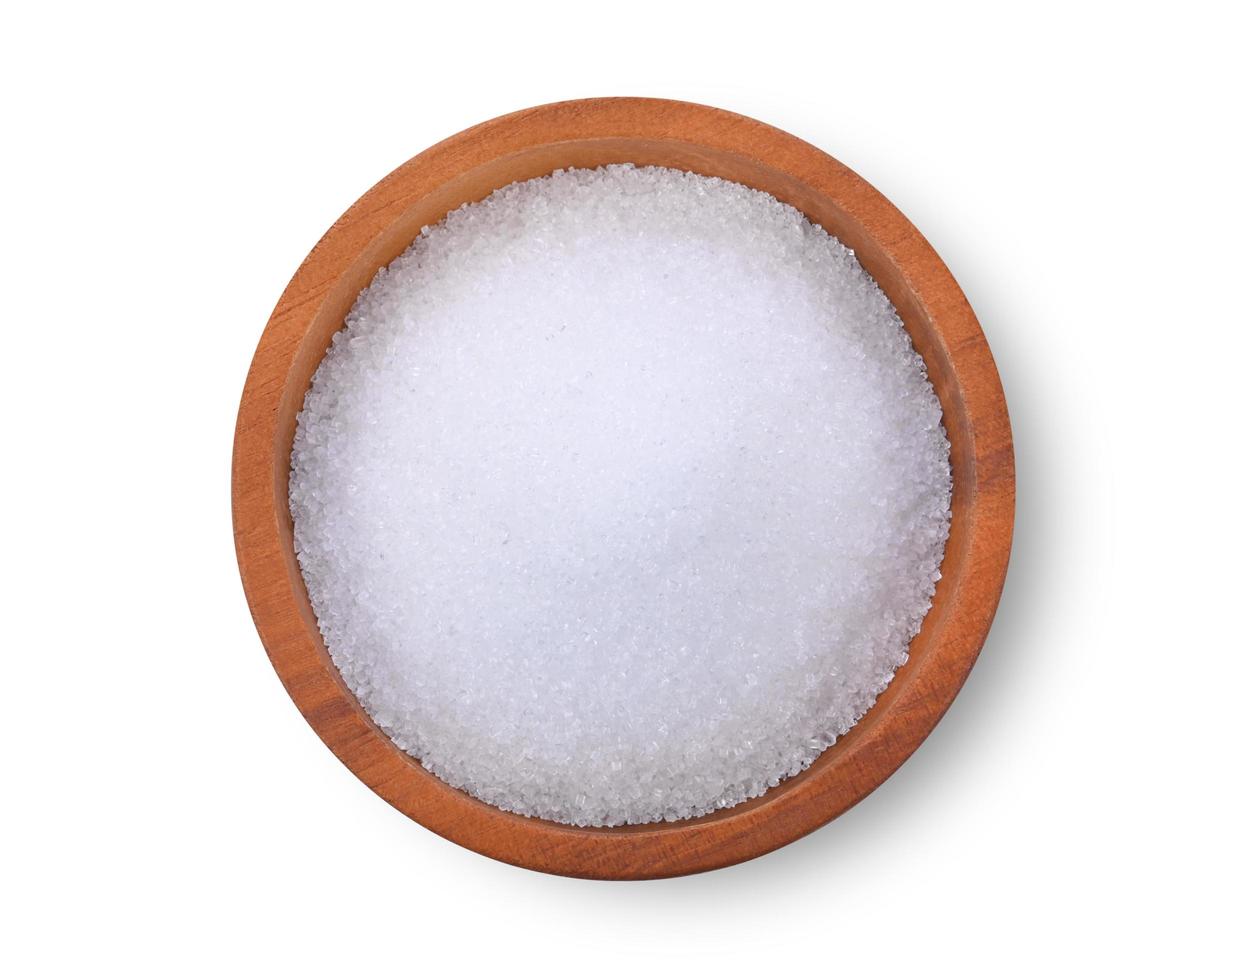 zucchero in una ciotola di legno su sfondo bianco. vista dall'alto foto